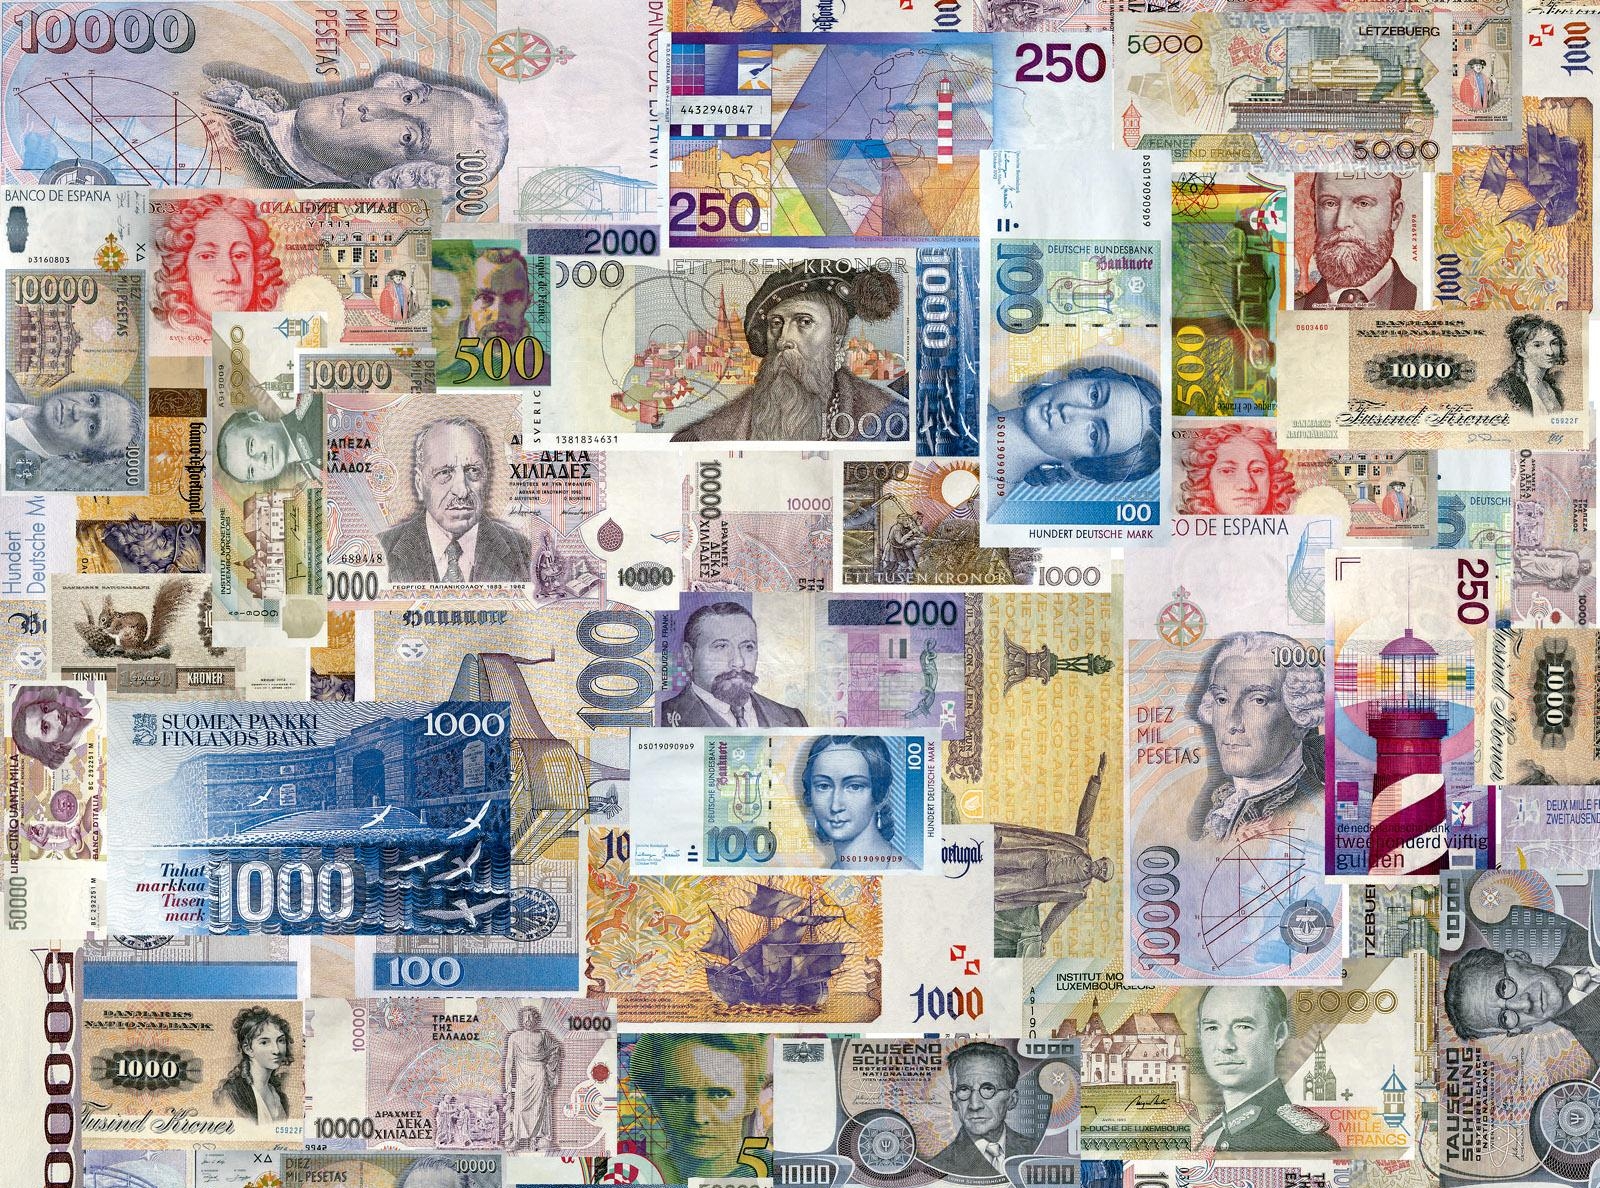 Множество валют включены в валютную систему